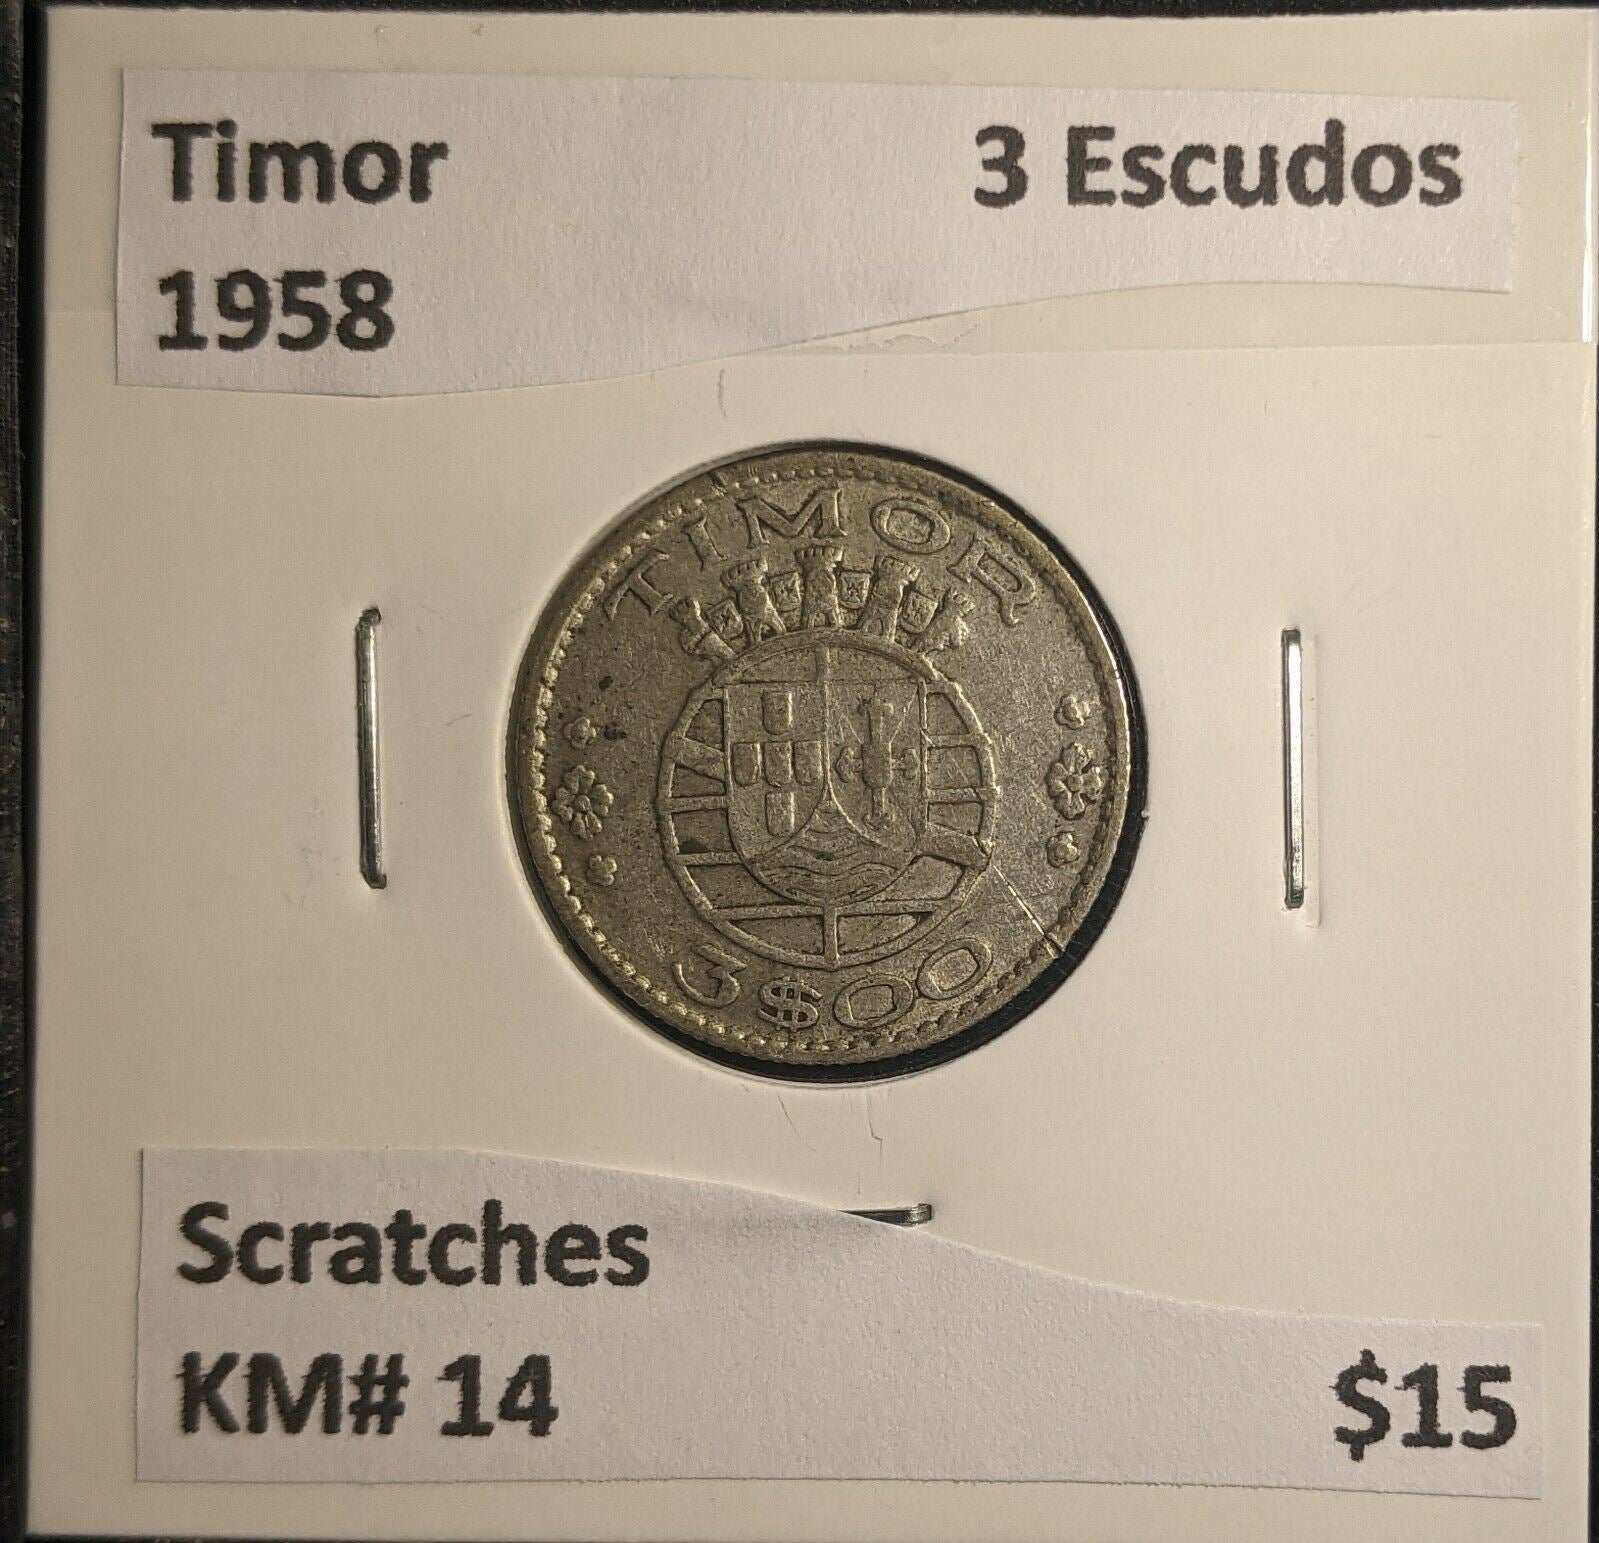 Timor 1958 3 Escudos KM# 14 Scratches #576 6A